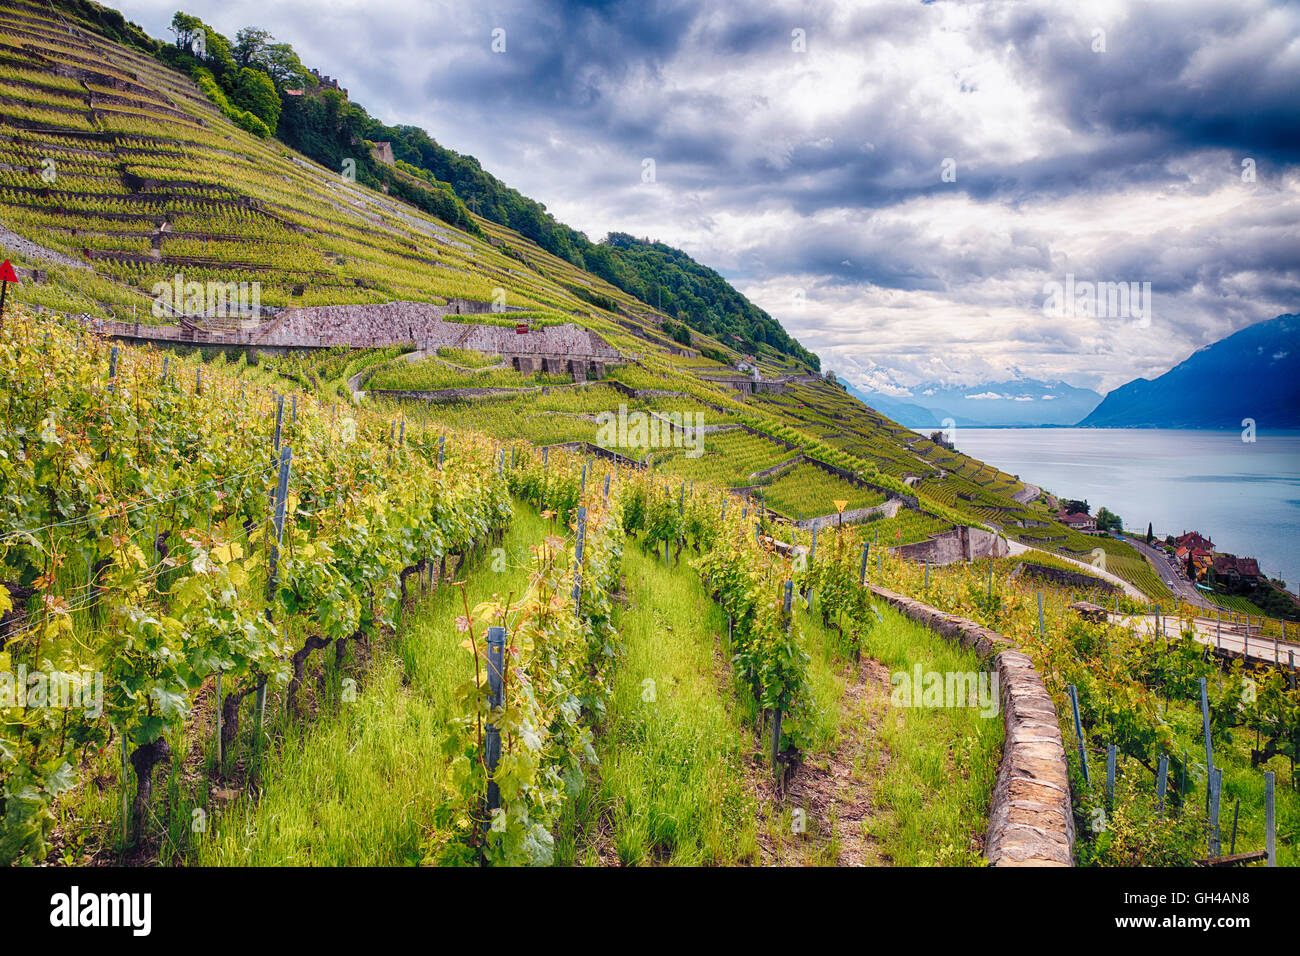 Fila di vigneti in collina, vigneto di Lavaux, la terrazza sul lago di Ginevra, Canton Vaud, Svizzera Foto Stock